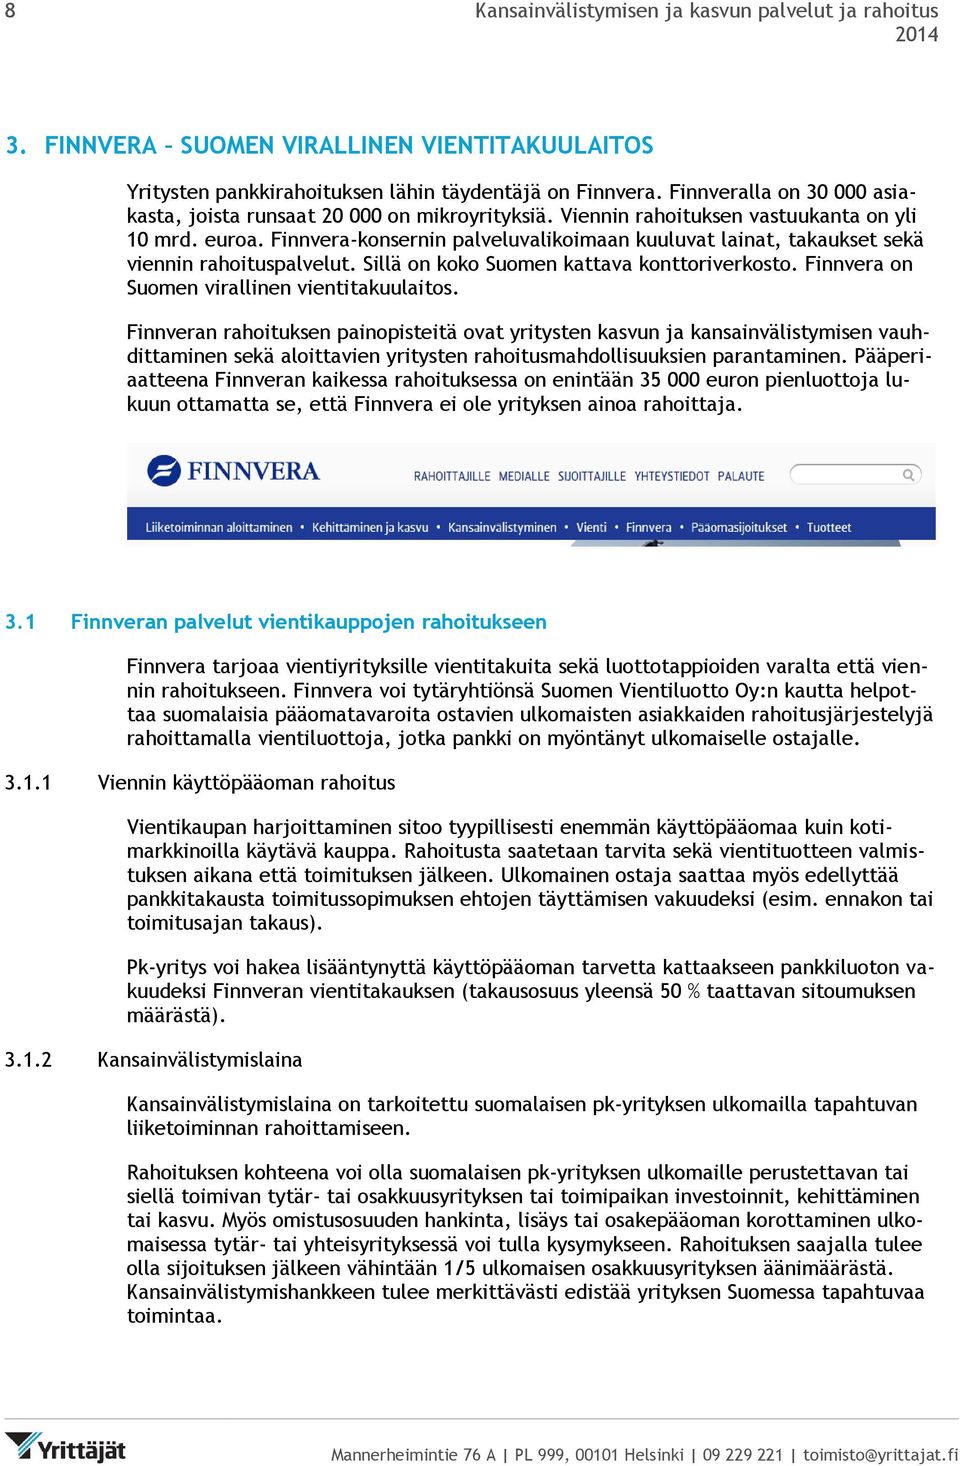 Finnvera-konsernin palveluvalikoimaan kuuluvat lainat, takaukset sekä viennin rahoituspalvelut. Sillä on koko Suomen kattava konttoriverkosto. Finnvera on Suomen virallinen vientitakuulaitos.